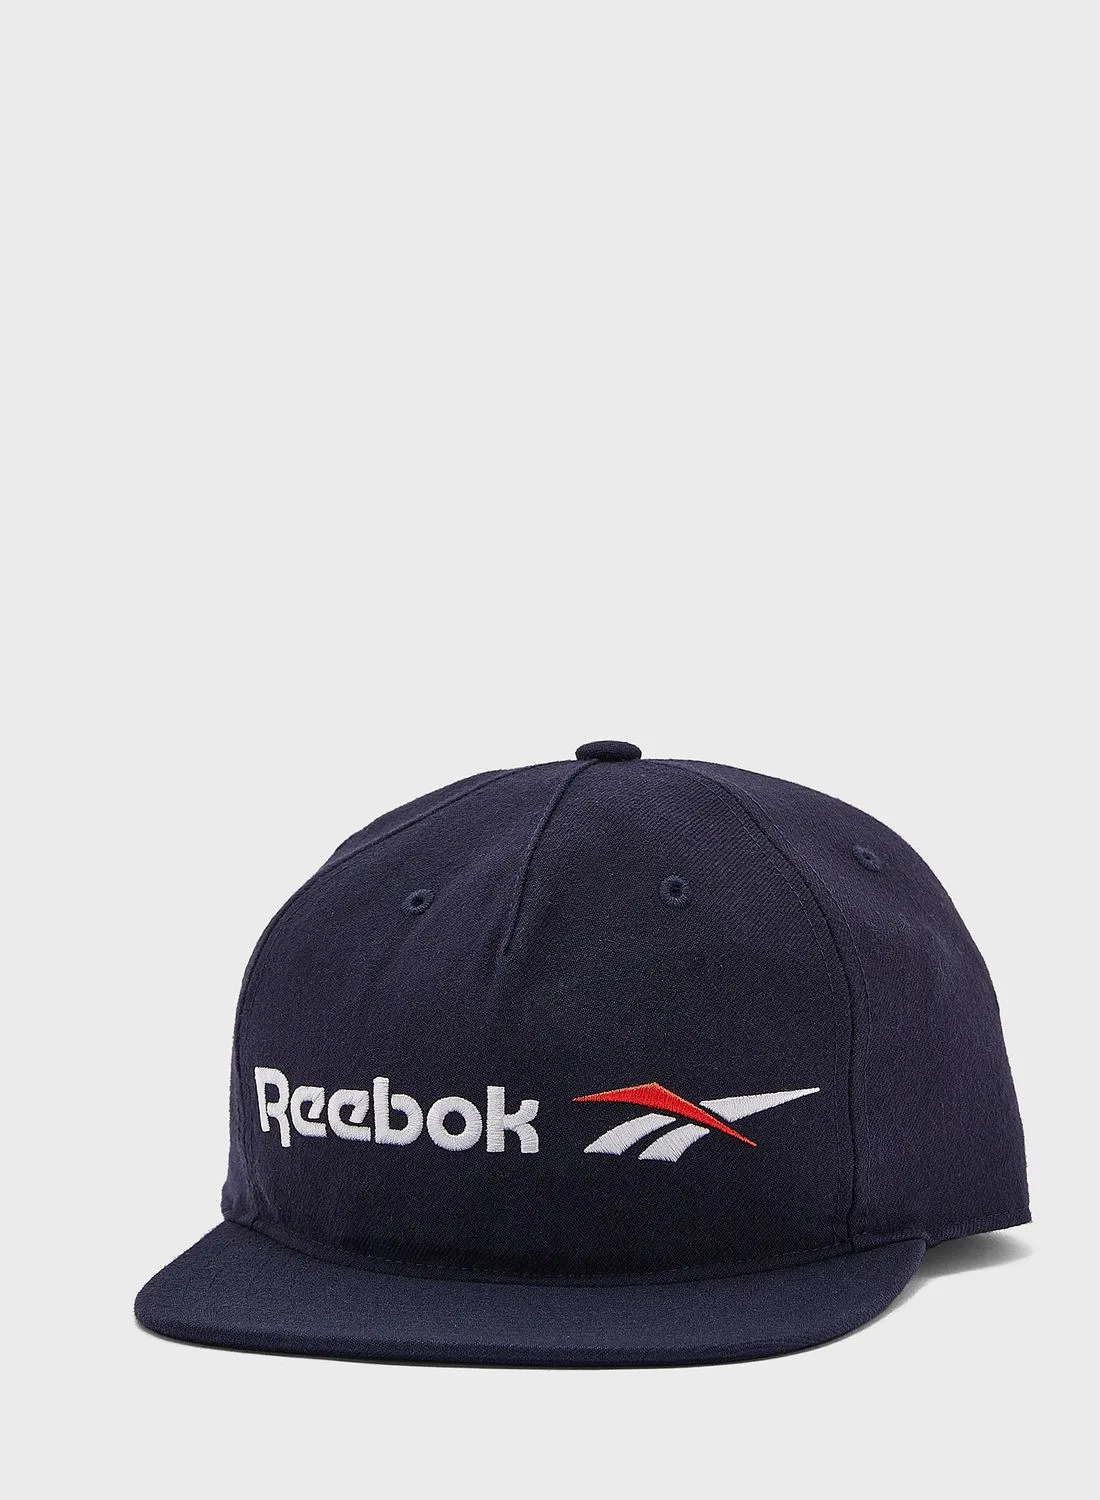 قبعة ريبوك كلاسيكس فيكتور